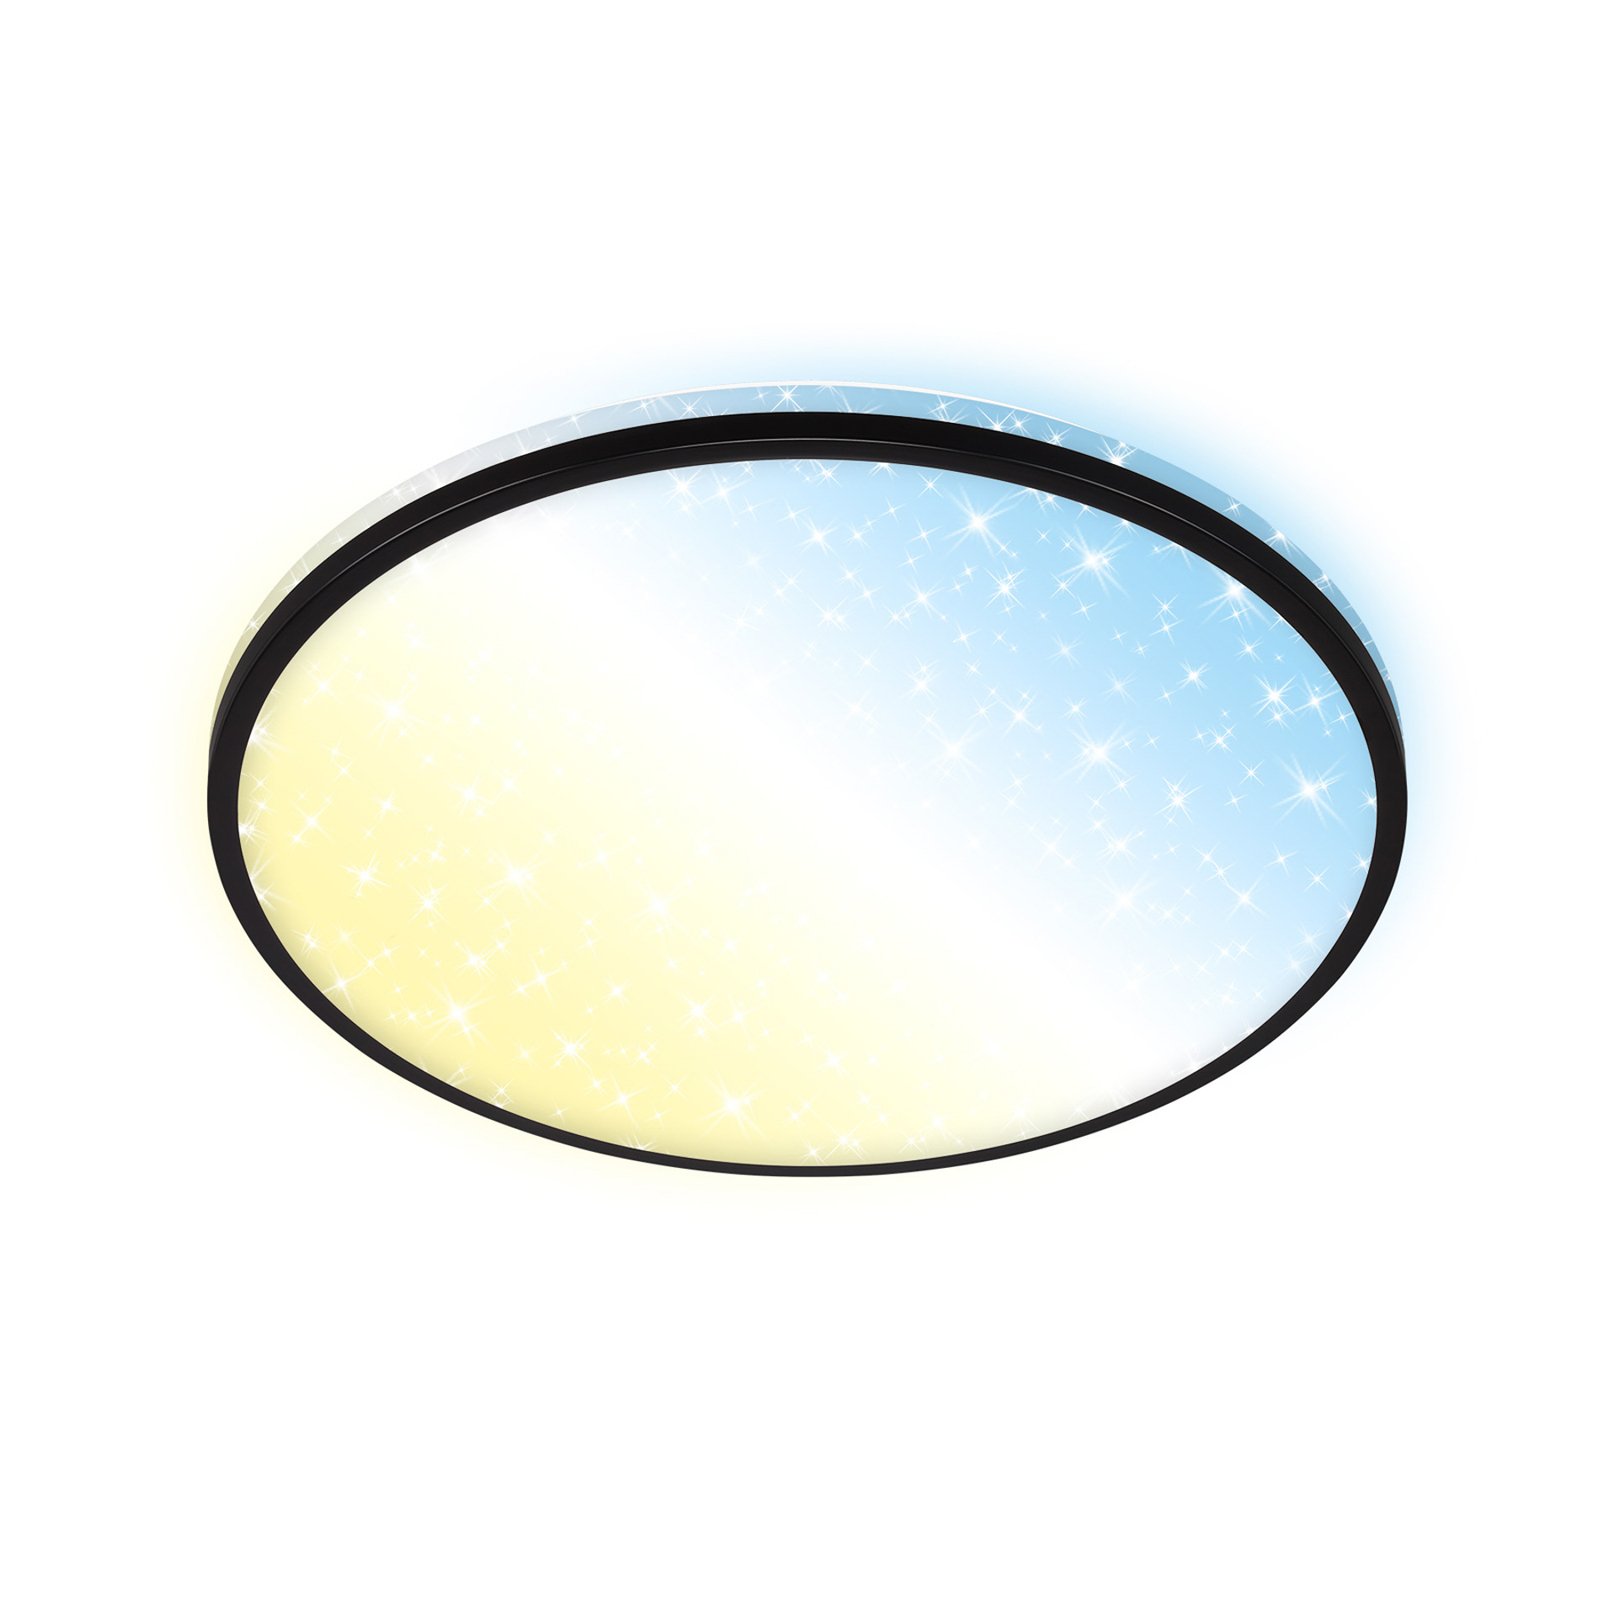 LED-taklampa Ivy Sky S, stjärndekor, Ø 33 cm